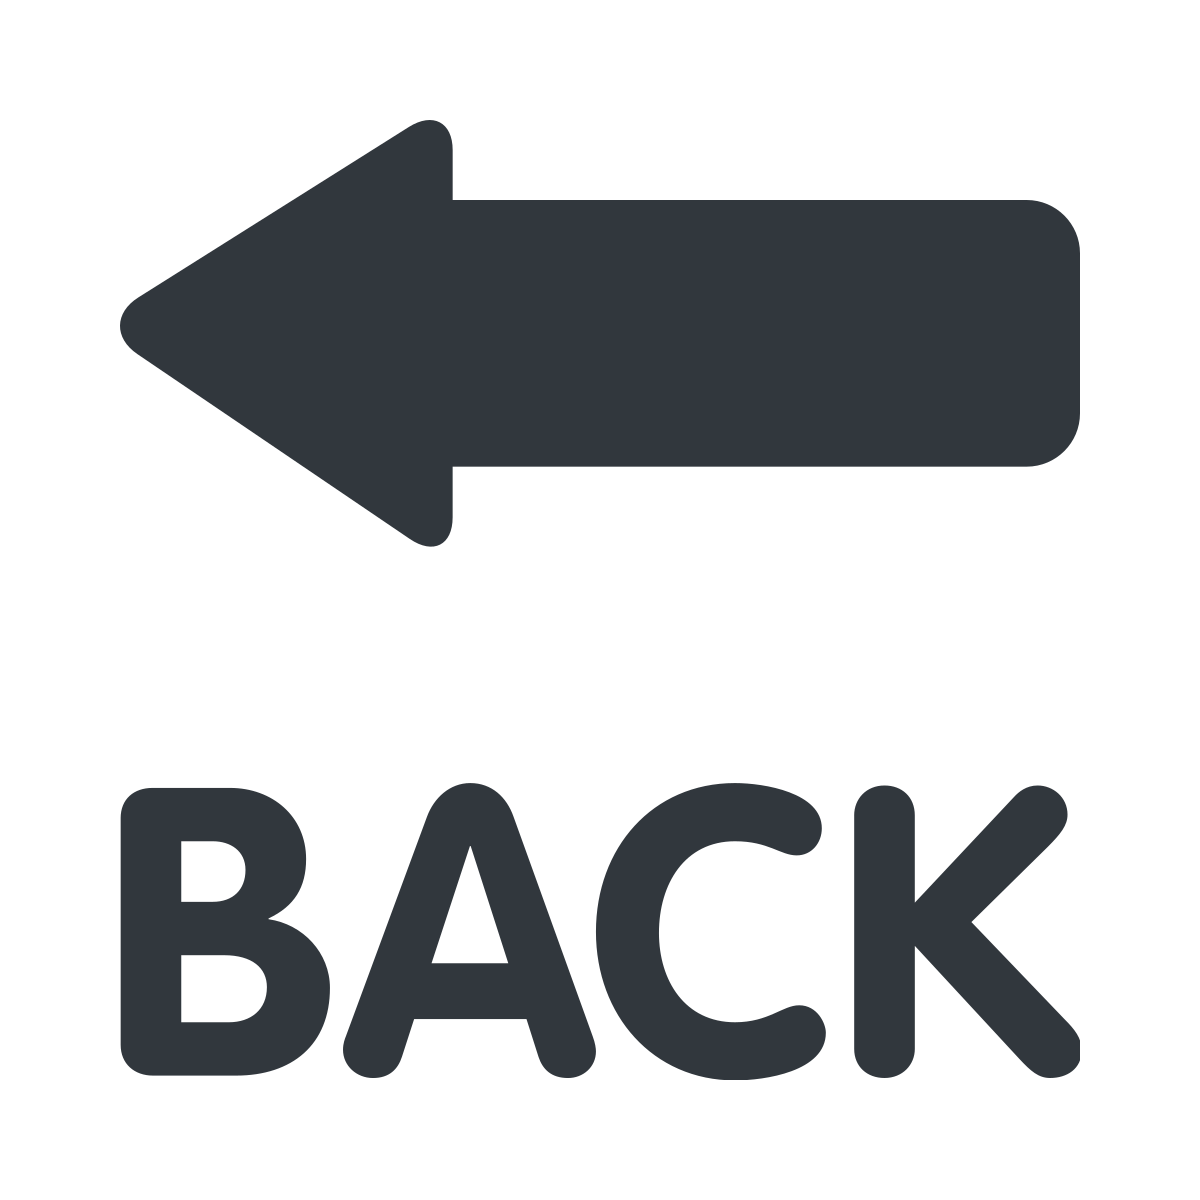 BACK Arrow Emoji - What Emoji 類